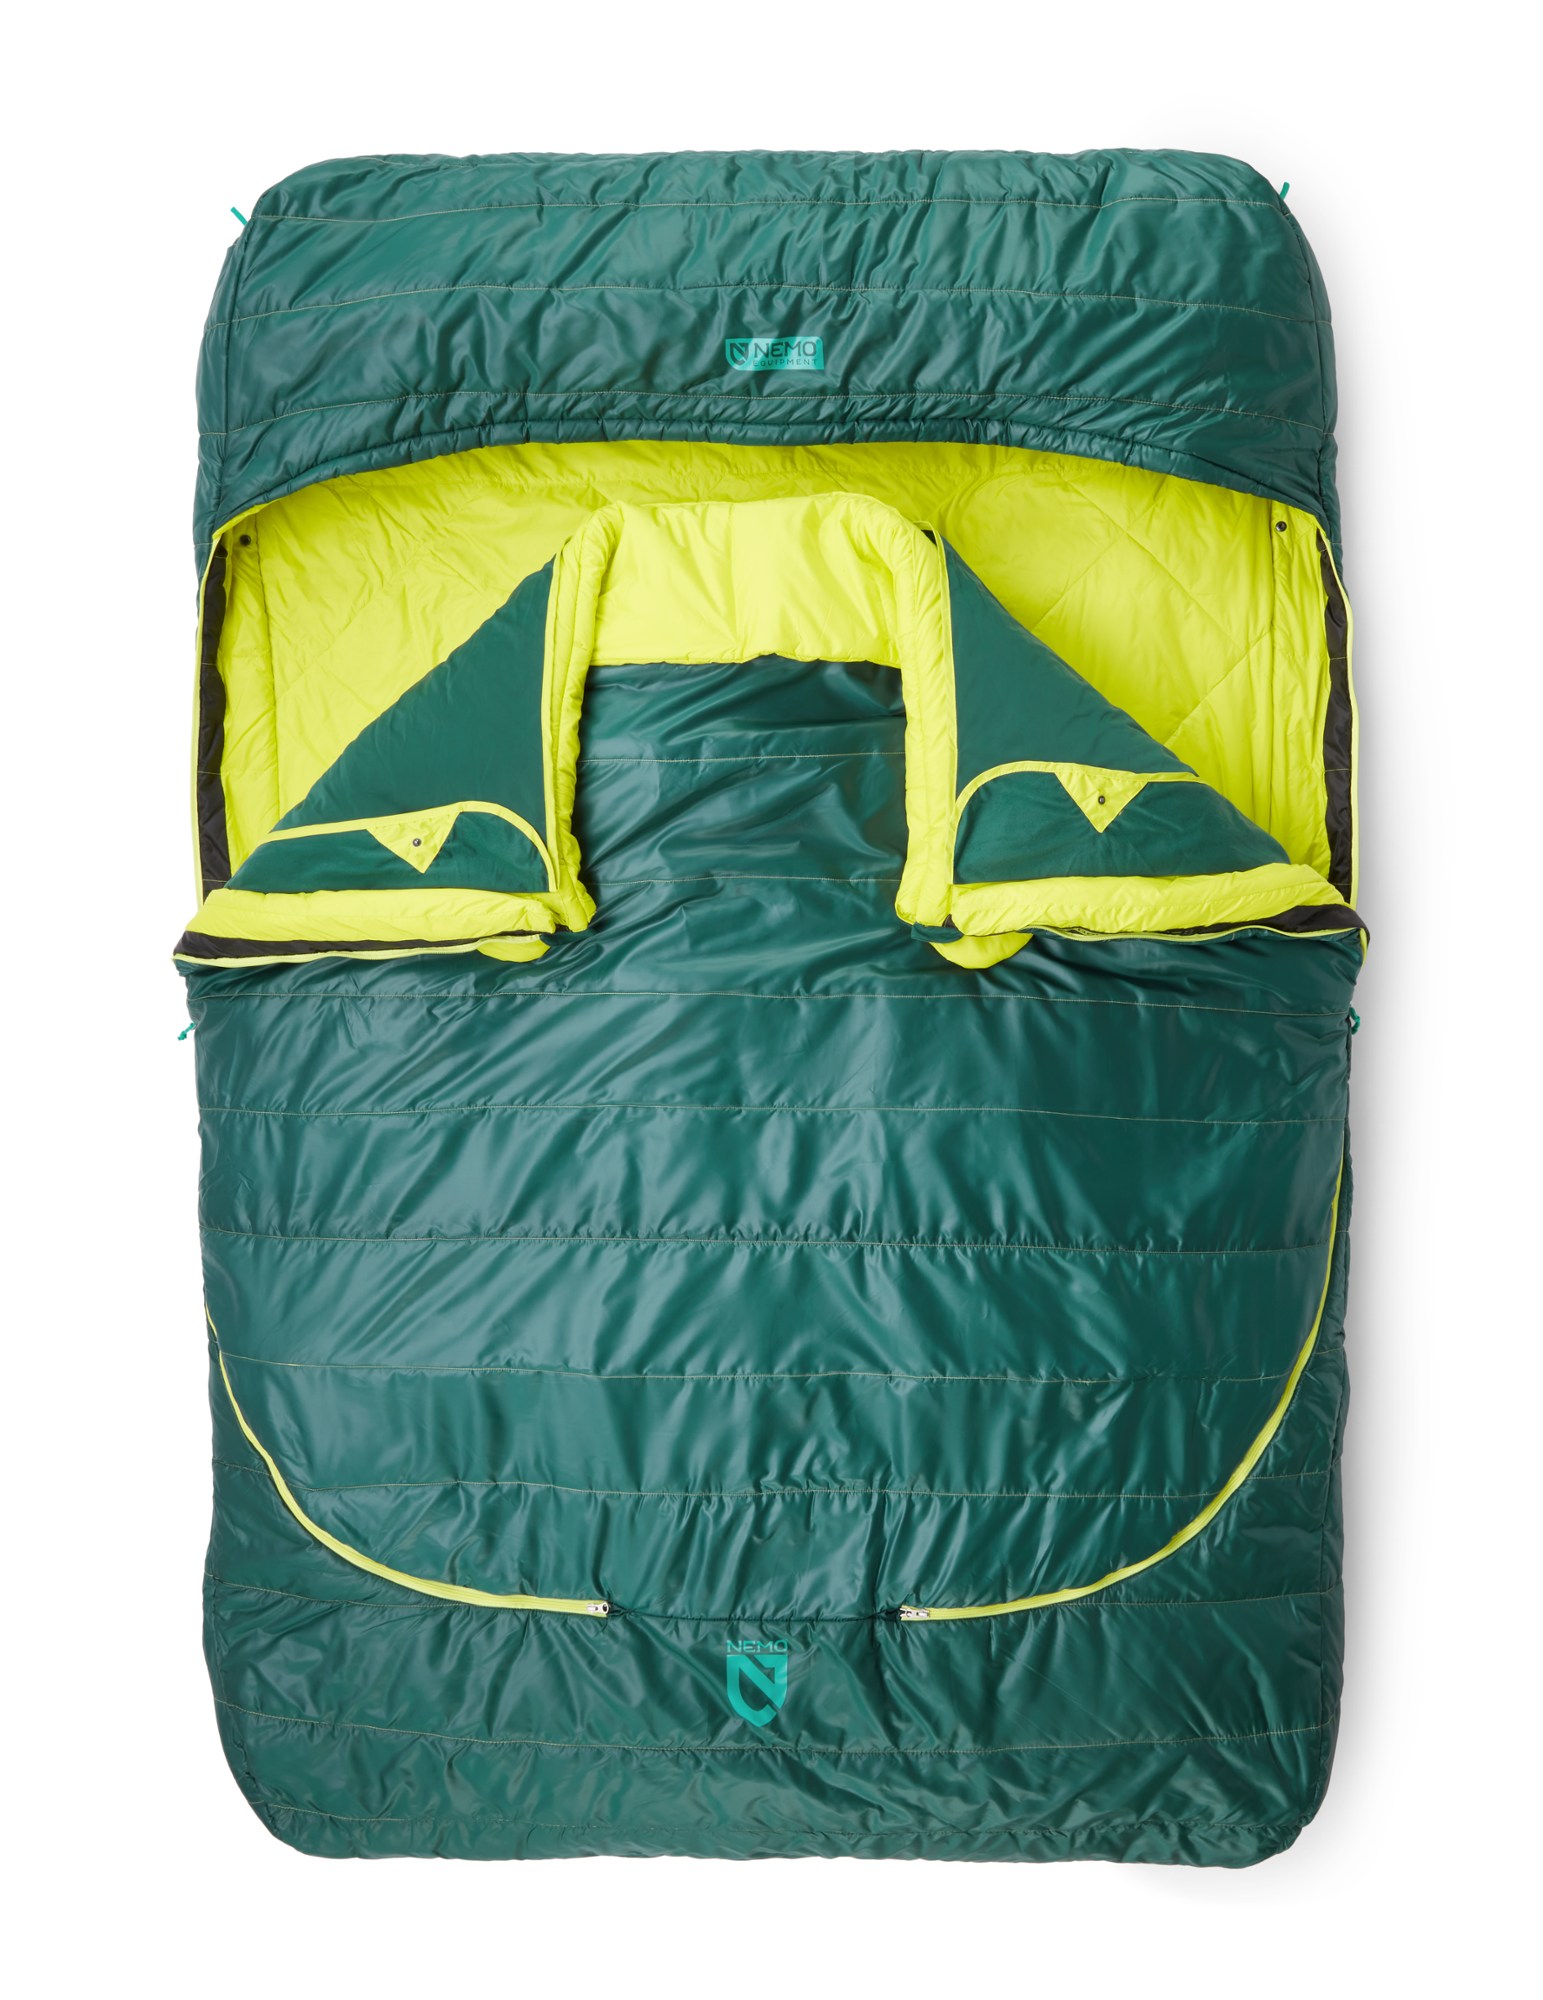 Двухместный спальный мешок Jazz 30 NEMO, зеленый